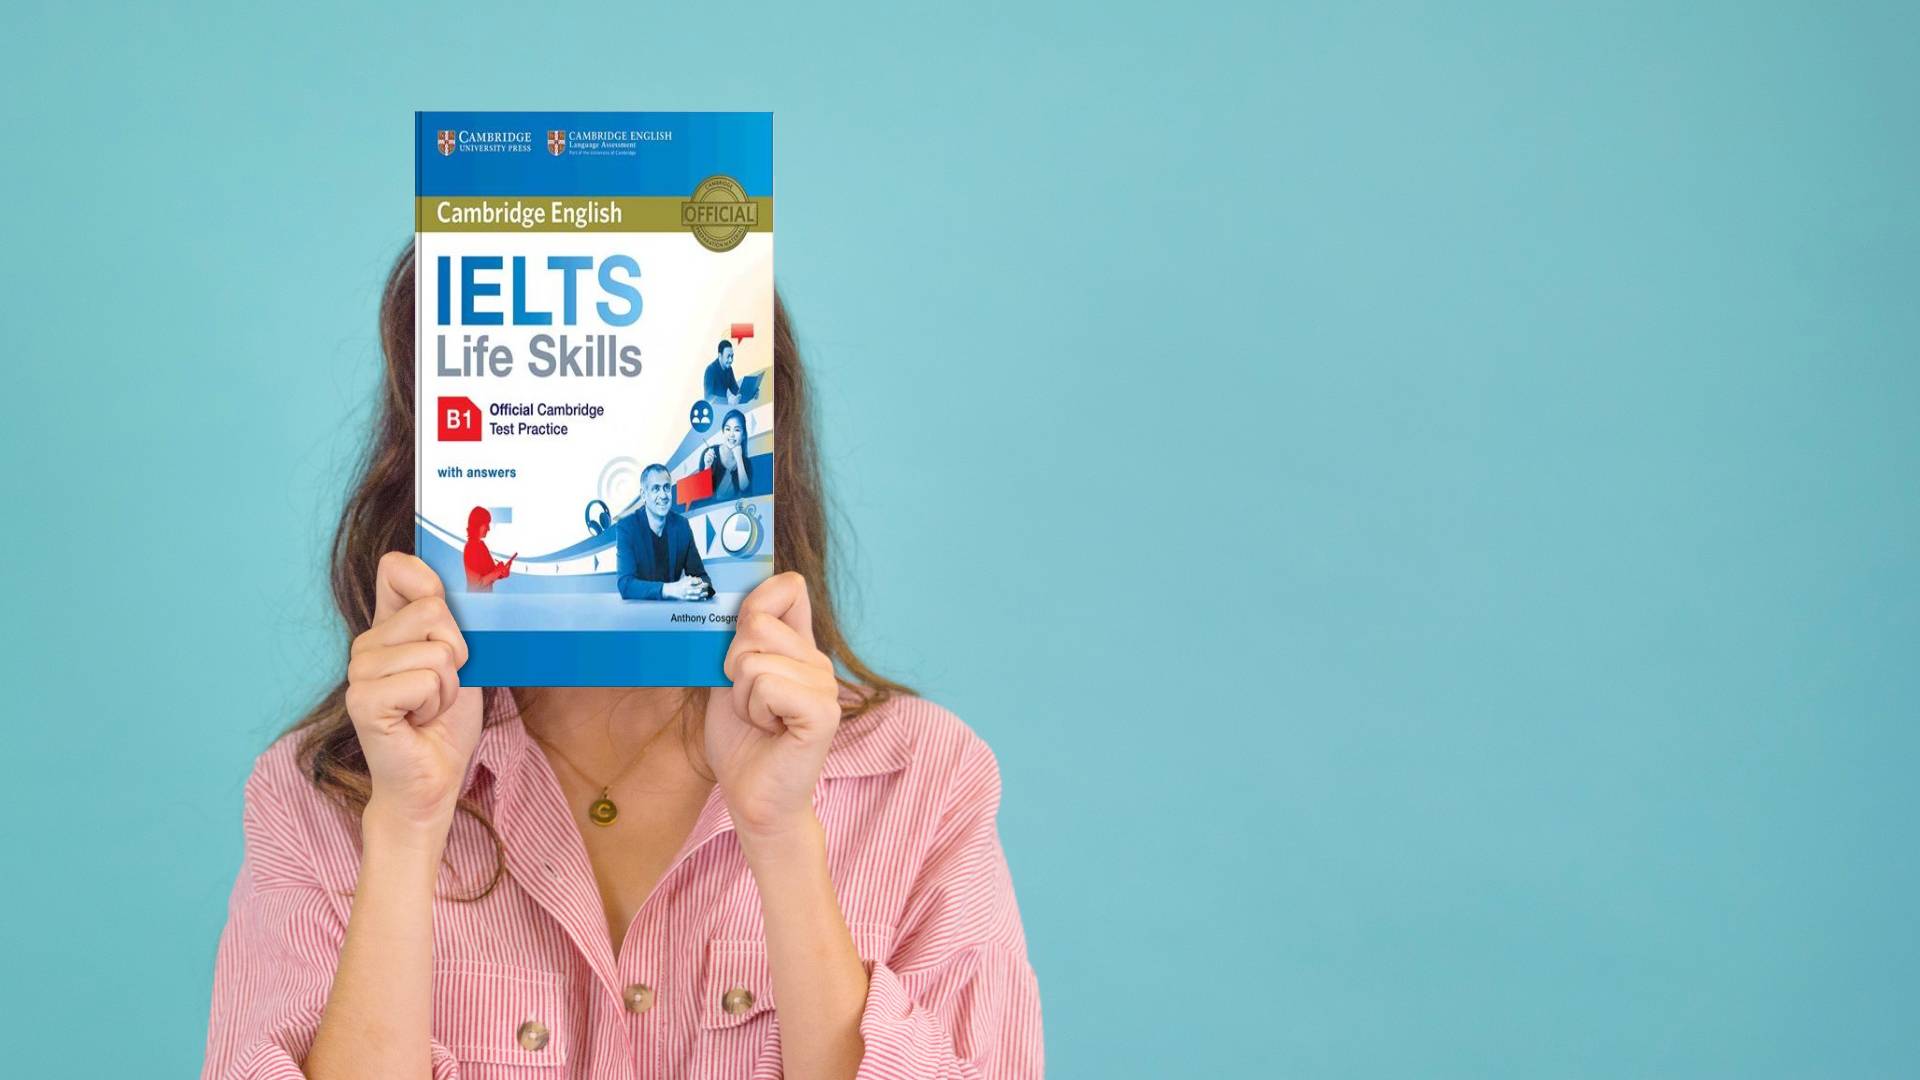 کتاب Cambridge English IELTS Life Skills B1 کمبریج انگلیش آیلتس لایف اسکیلز